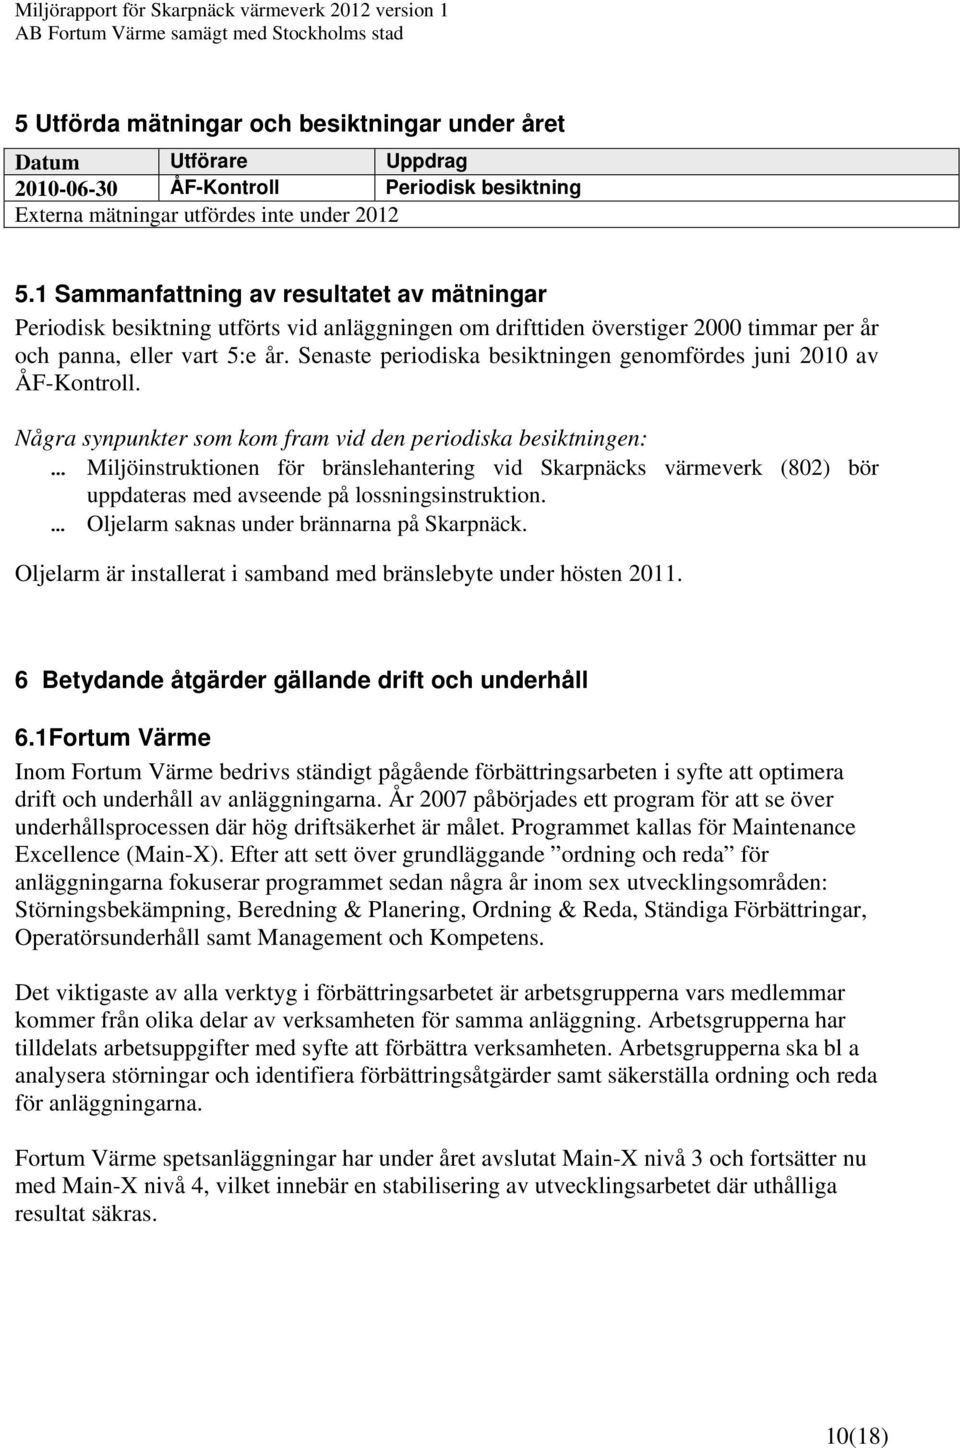 Senaste periodiska besiktningen genomfördes juni 2010 av ÅF-Kontroll.